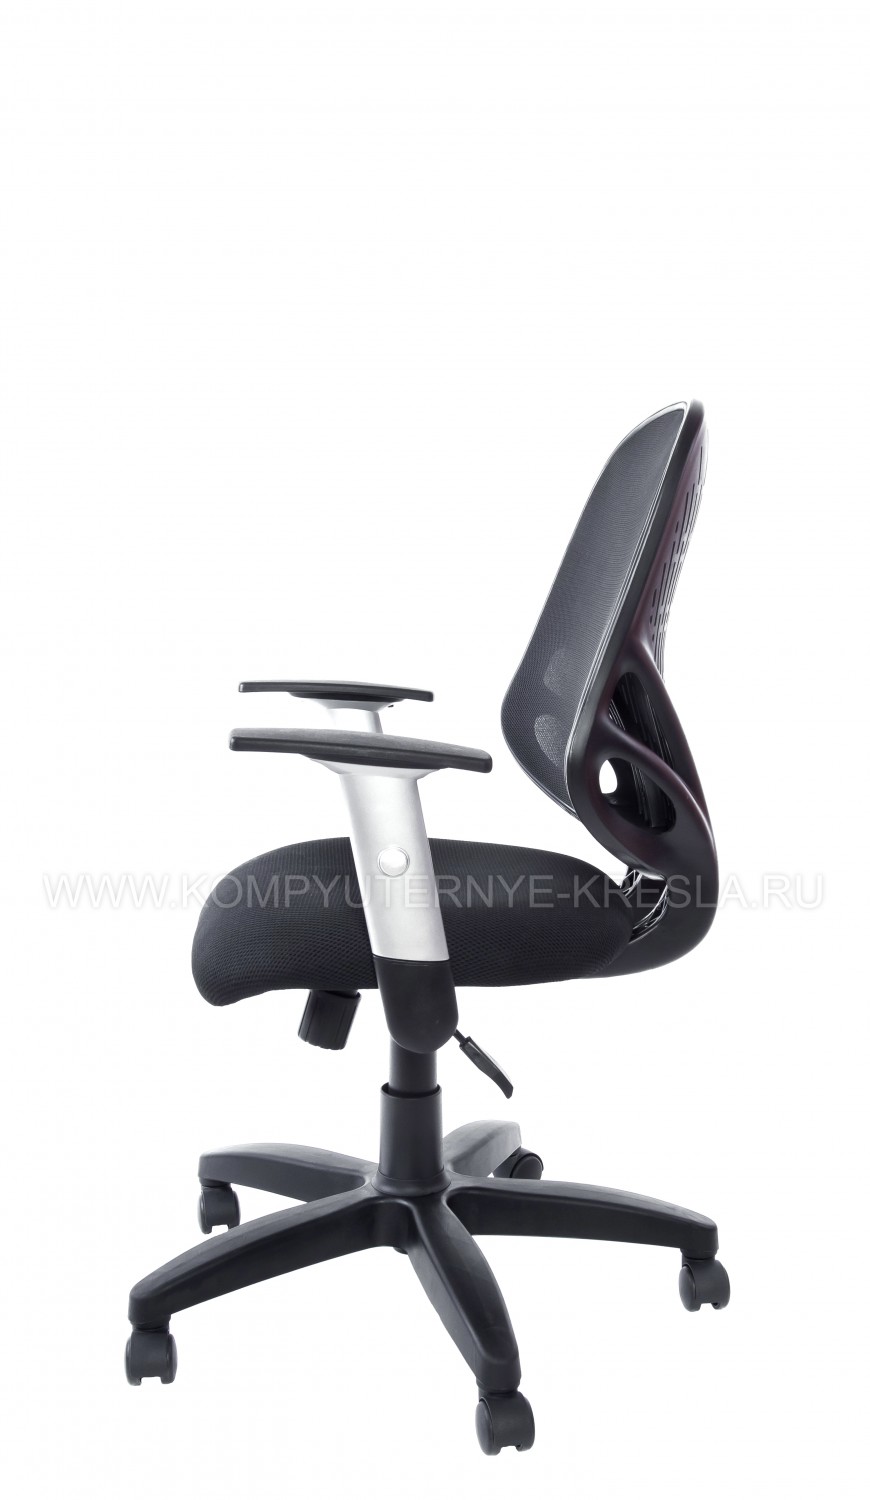 Компьютерное кресло КС 156-4 4